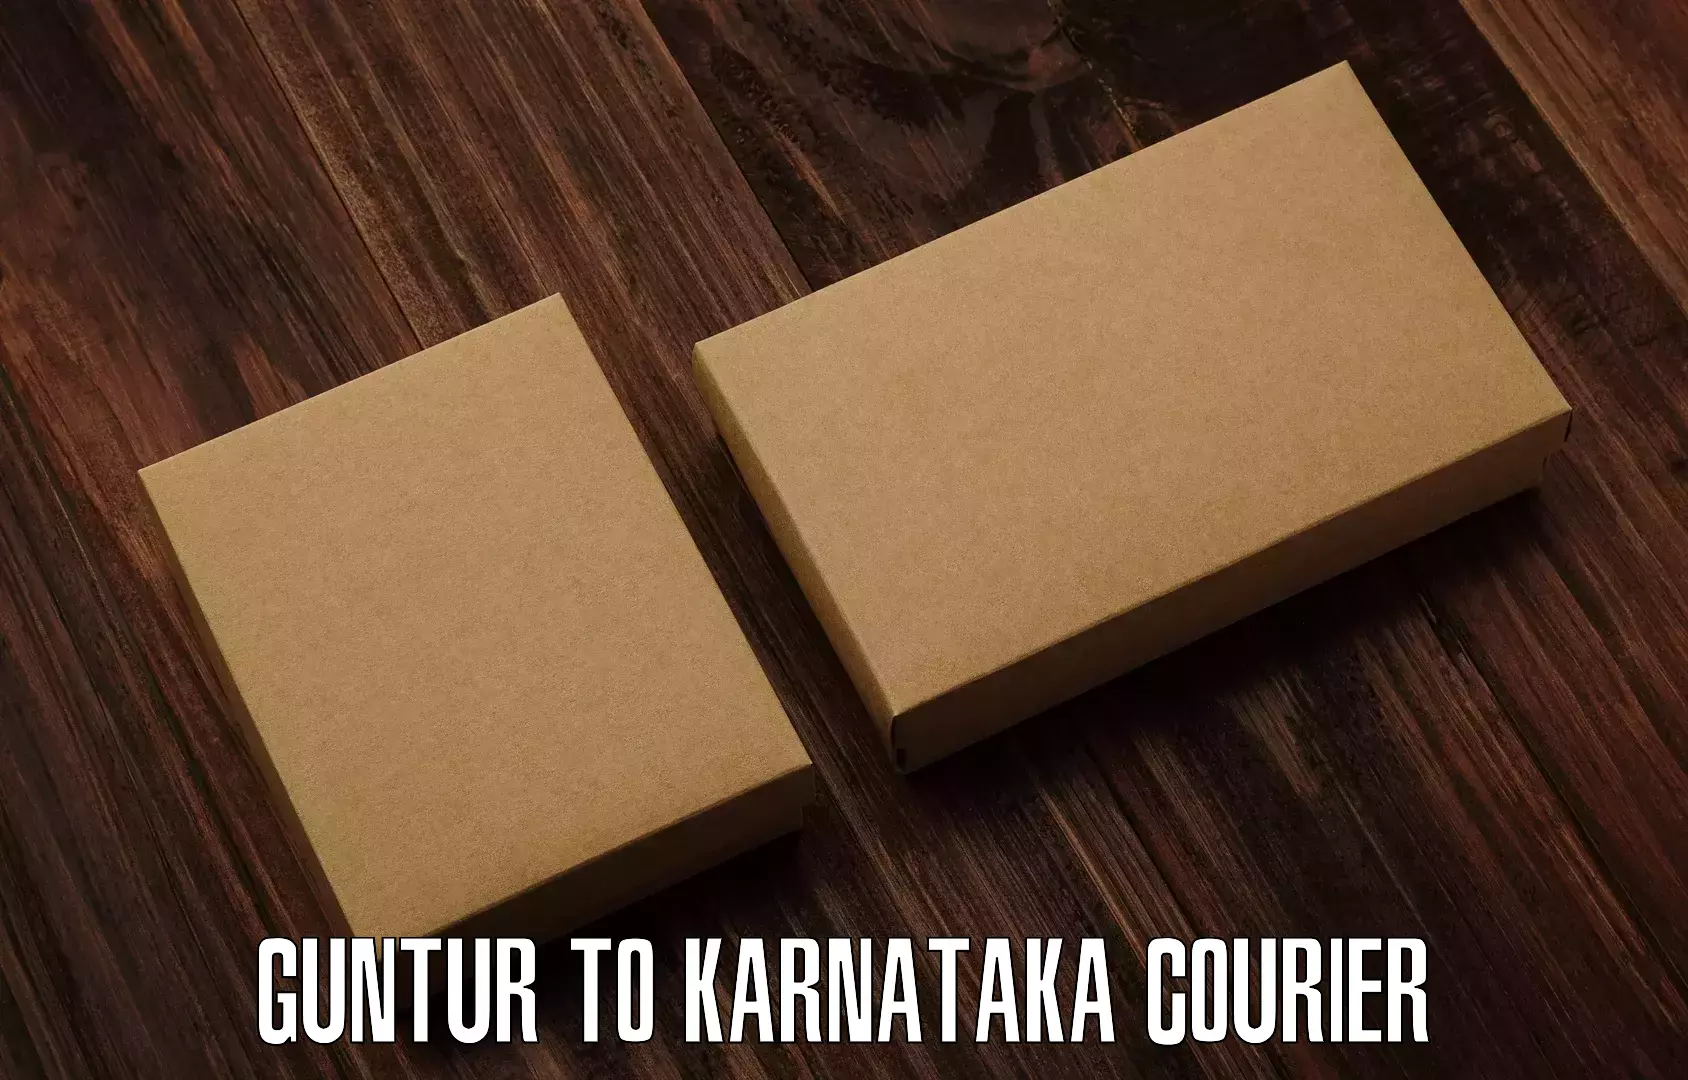 24-hour courier service Guntur to Mangalore Port